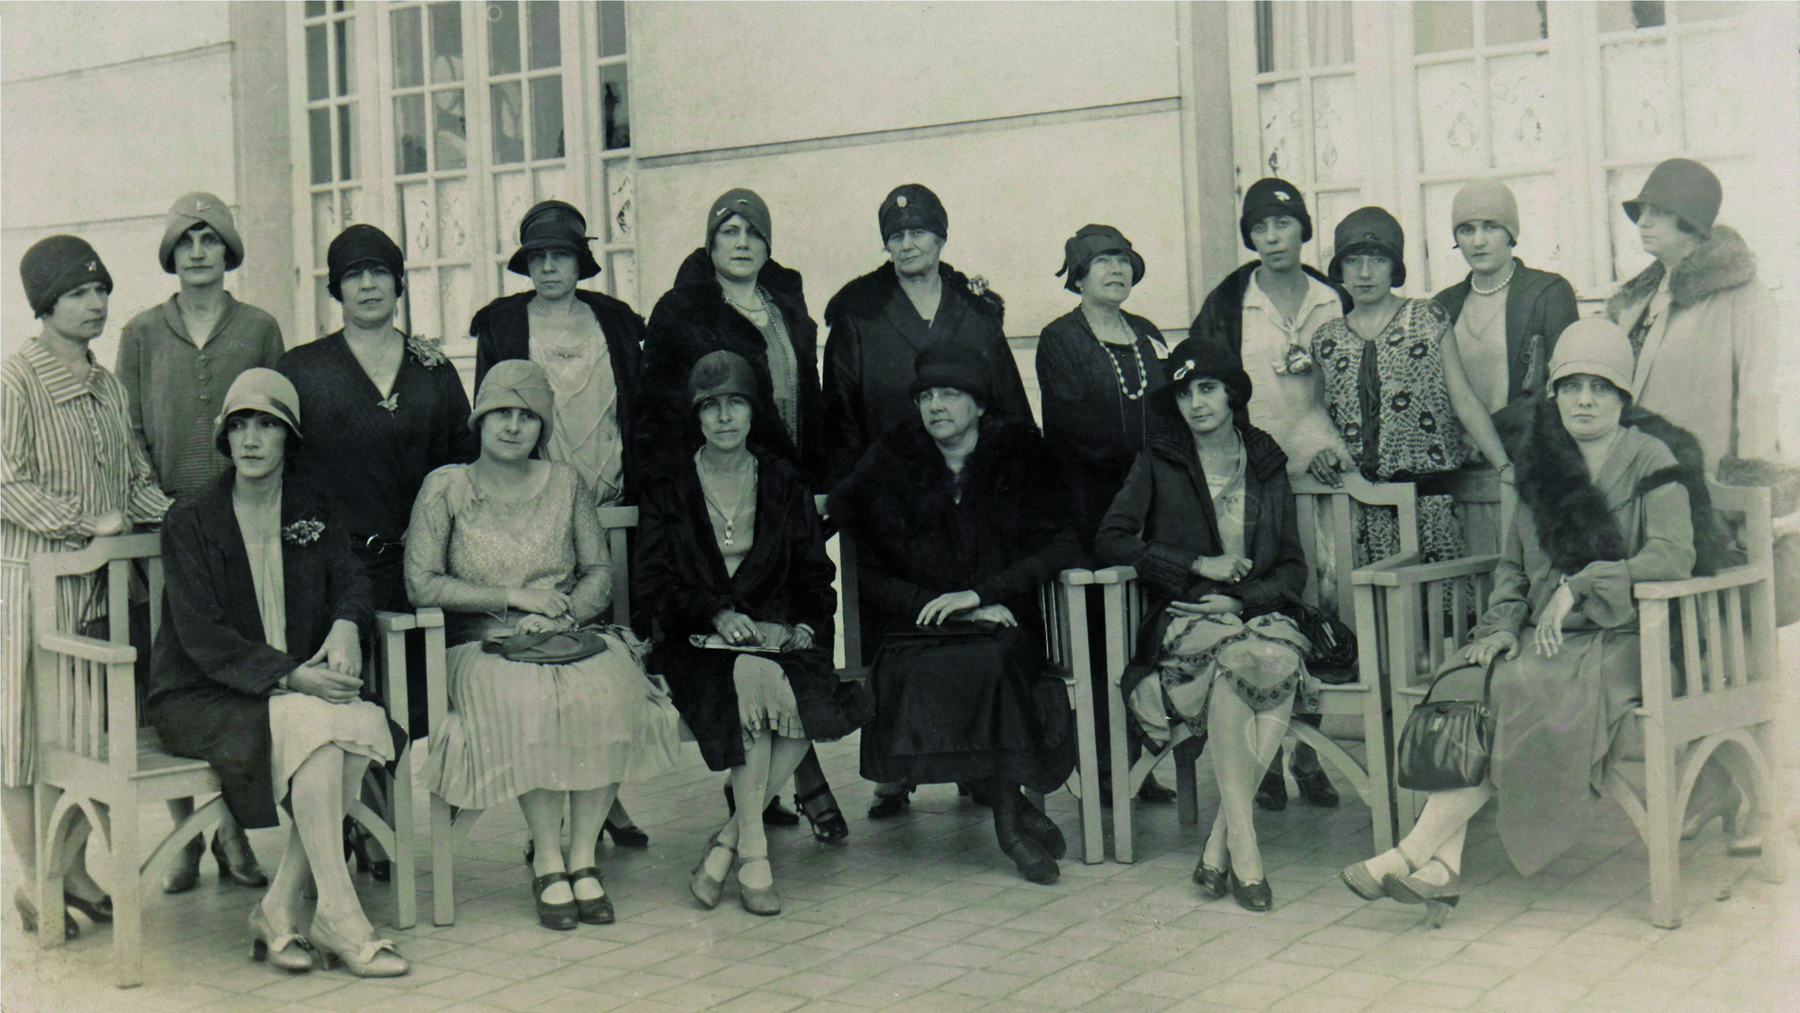 Fotografia em preto e branco. Um grupo de mulheres, lado a lado, distribuídas em duas fileiras. Na fileira da frente, as mulheres estão sentadas sobre cadeiras. Na fileira de trás, elas estão em pé. Todas elegantemente vestidas, trajando vestidos longos e chapéus. Algumas também usam casacos.